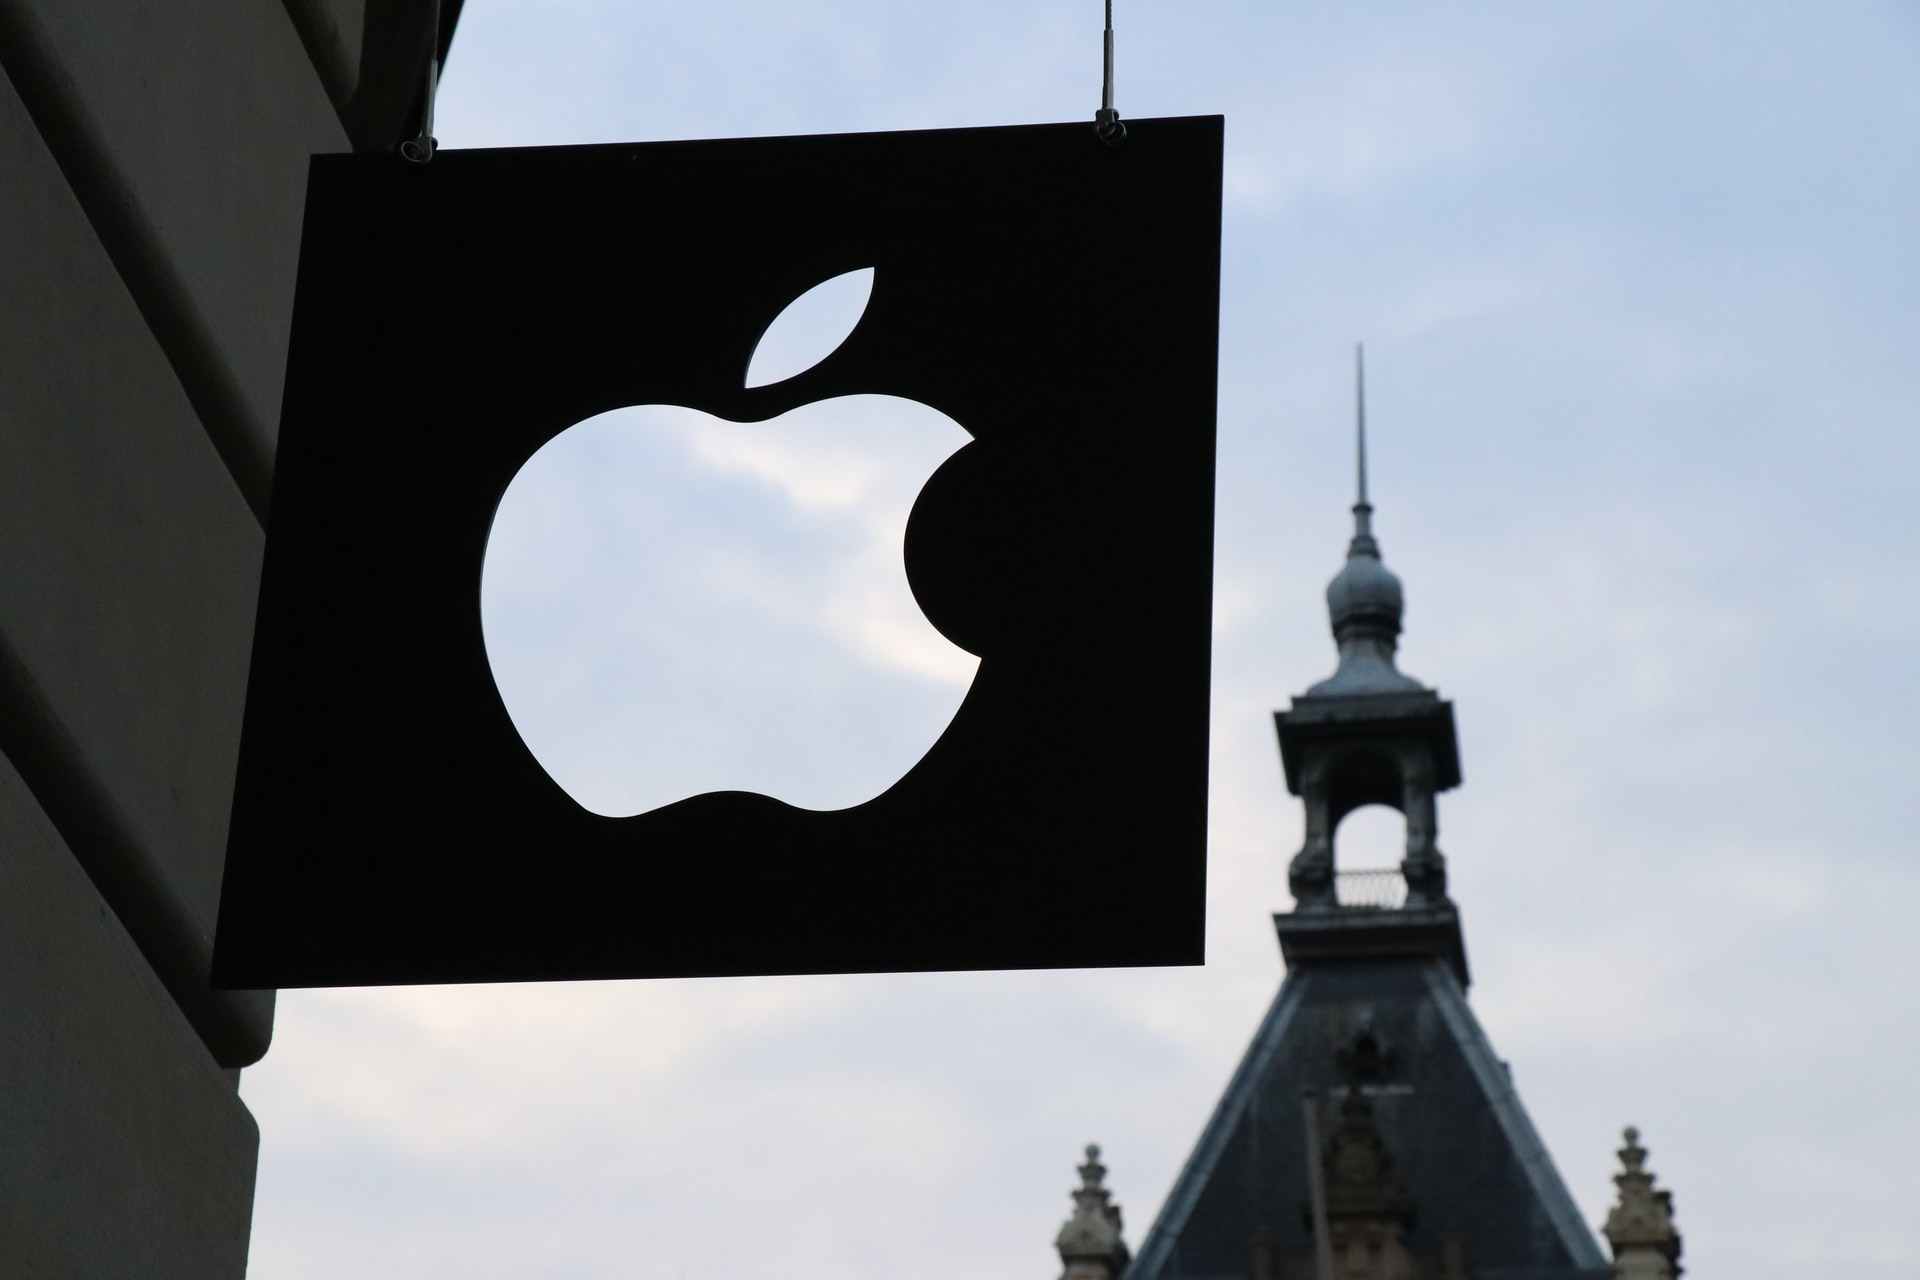 Apple faces a second EU antitrust complaint